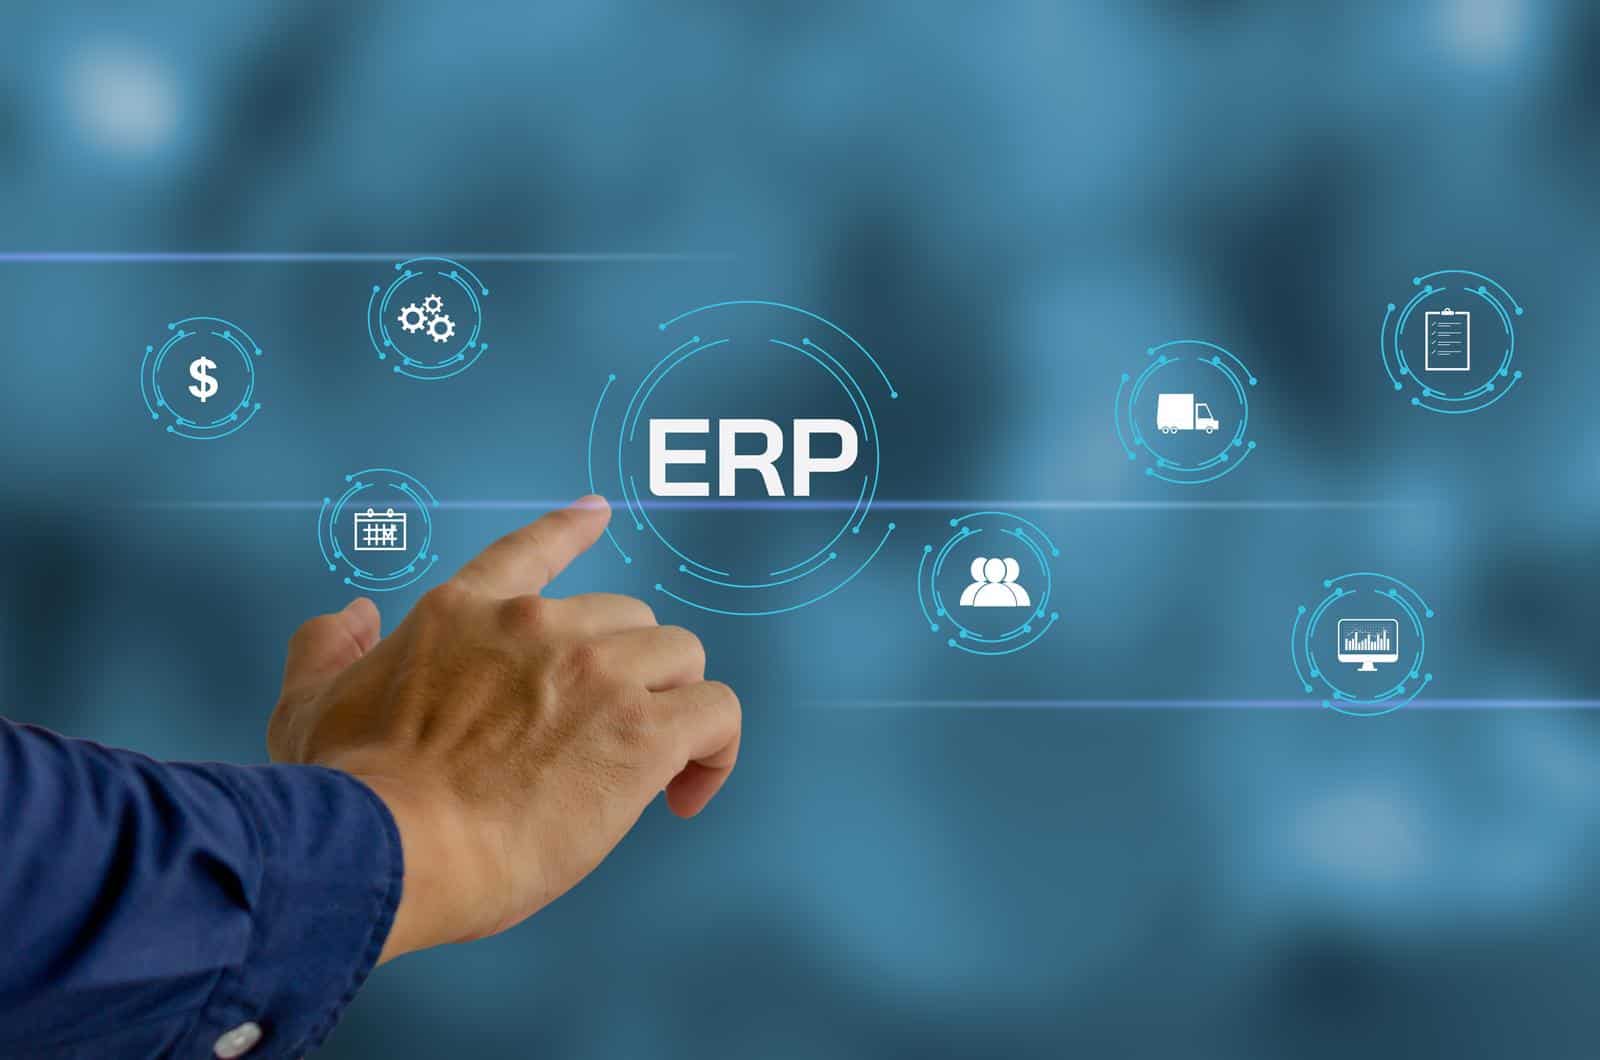 Un hombre señala la palabra "erp" en una pantalla azul, destacando los beneficios de implementar un sistema.